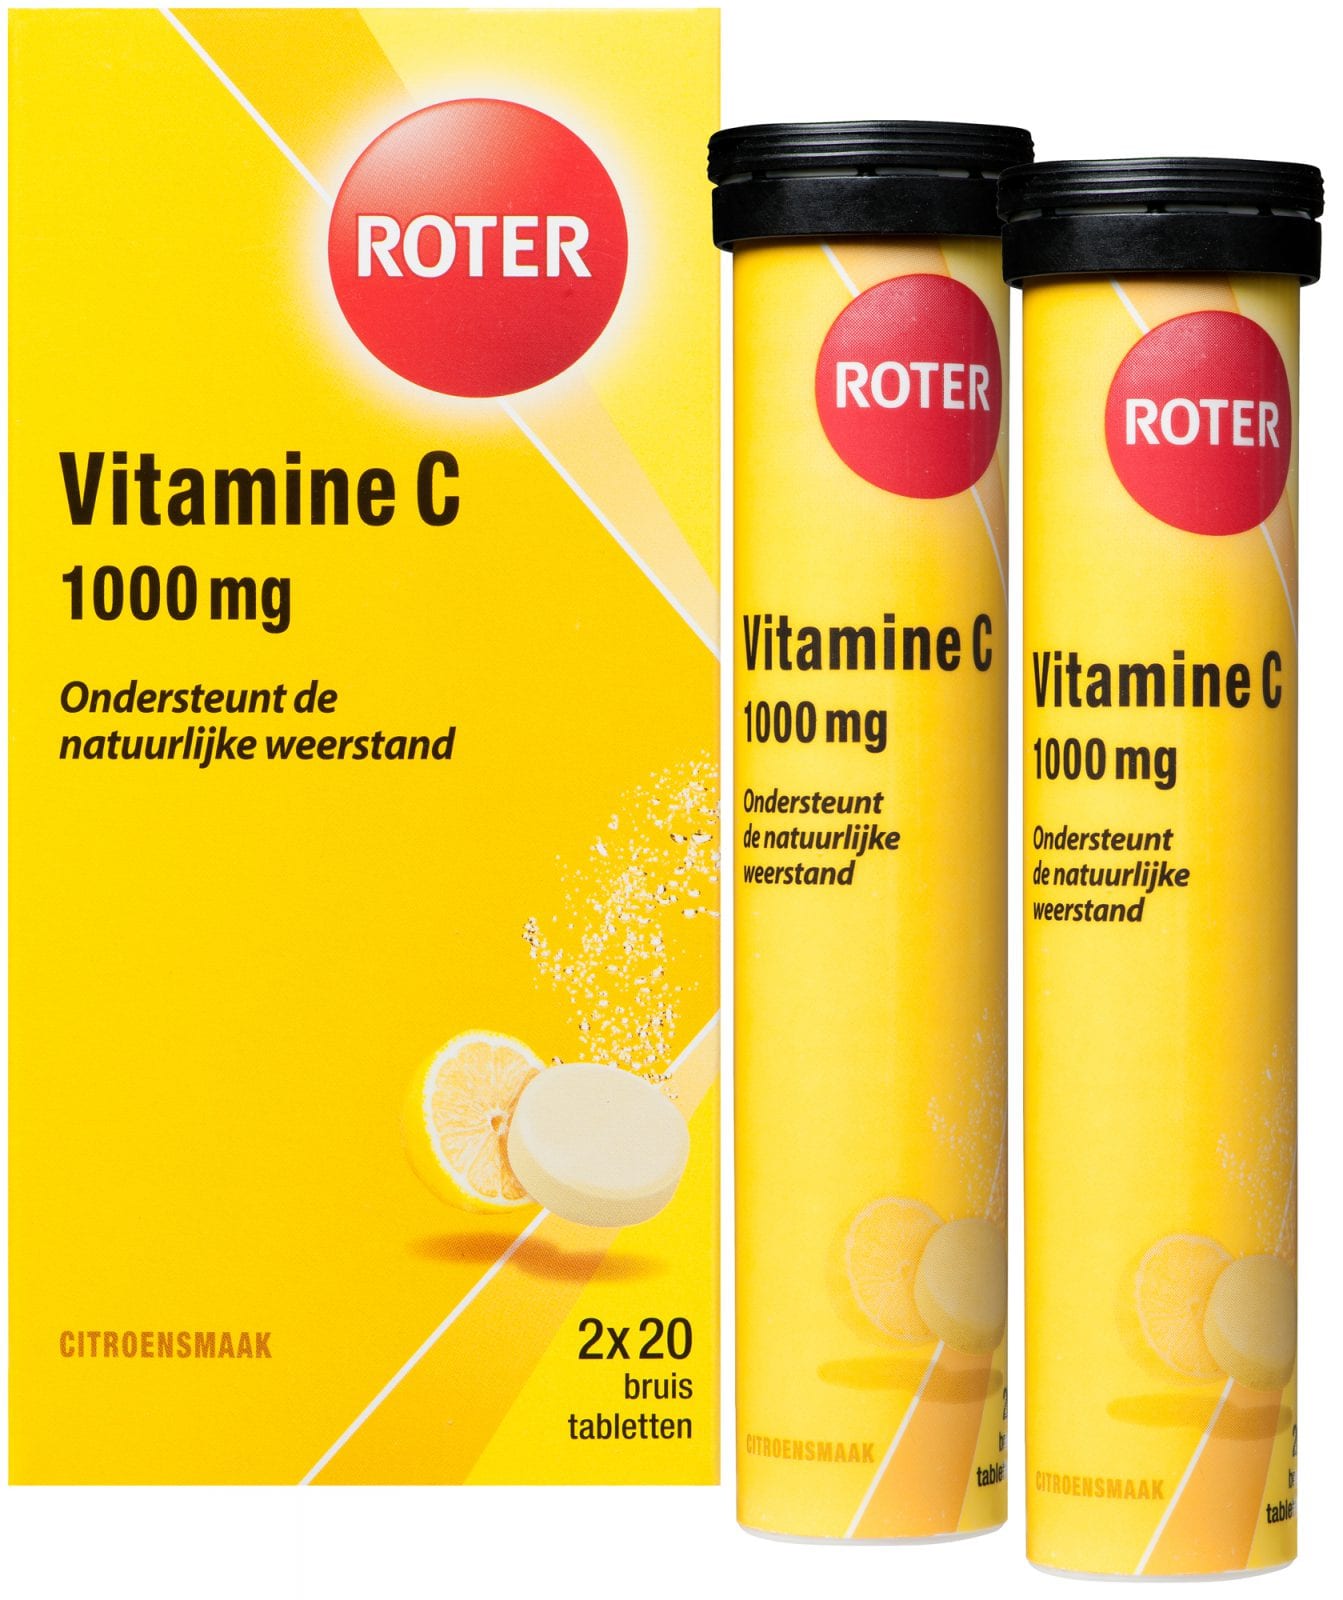 Vitamine C 1000 mg citroen duo 2 x bruistabletten 40 bruistabletten Roter ⋆ Bik & Bik NL